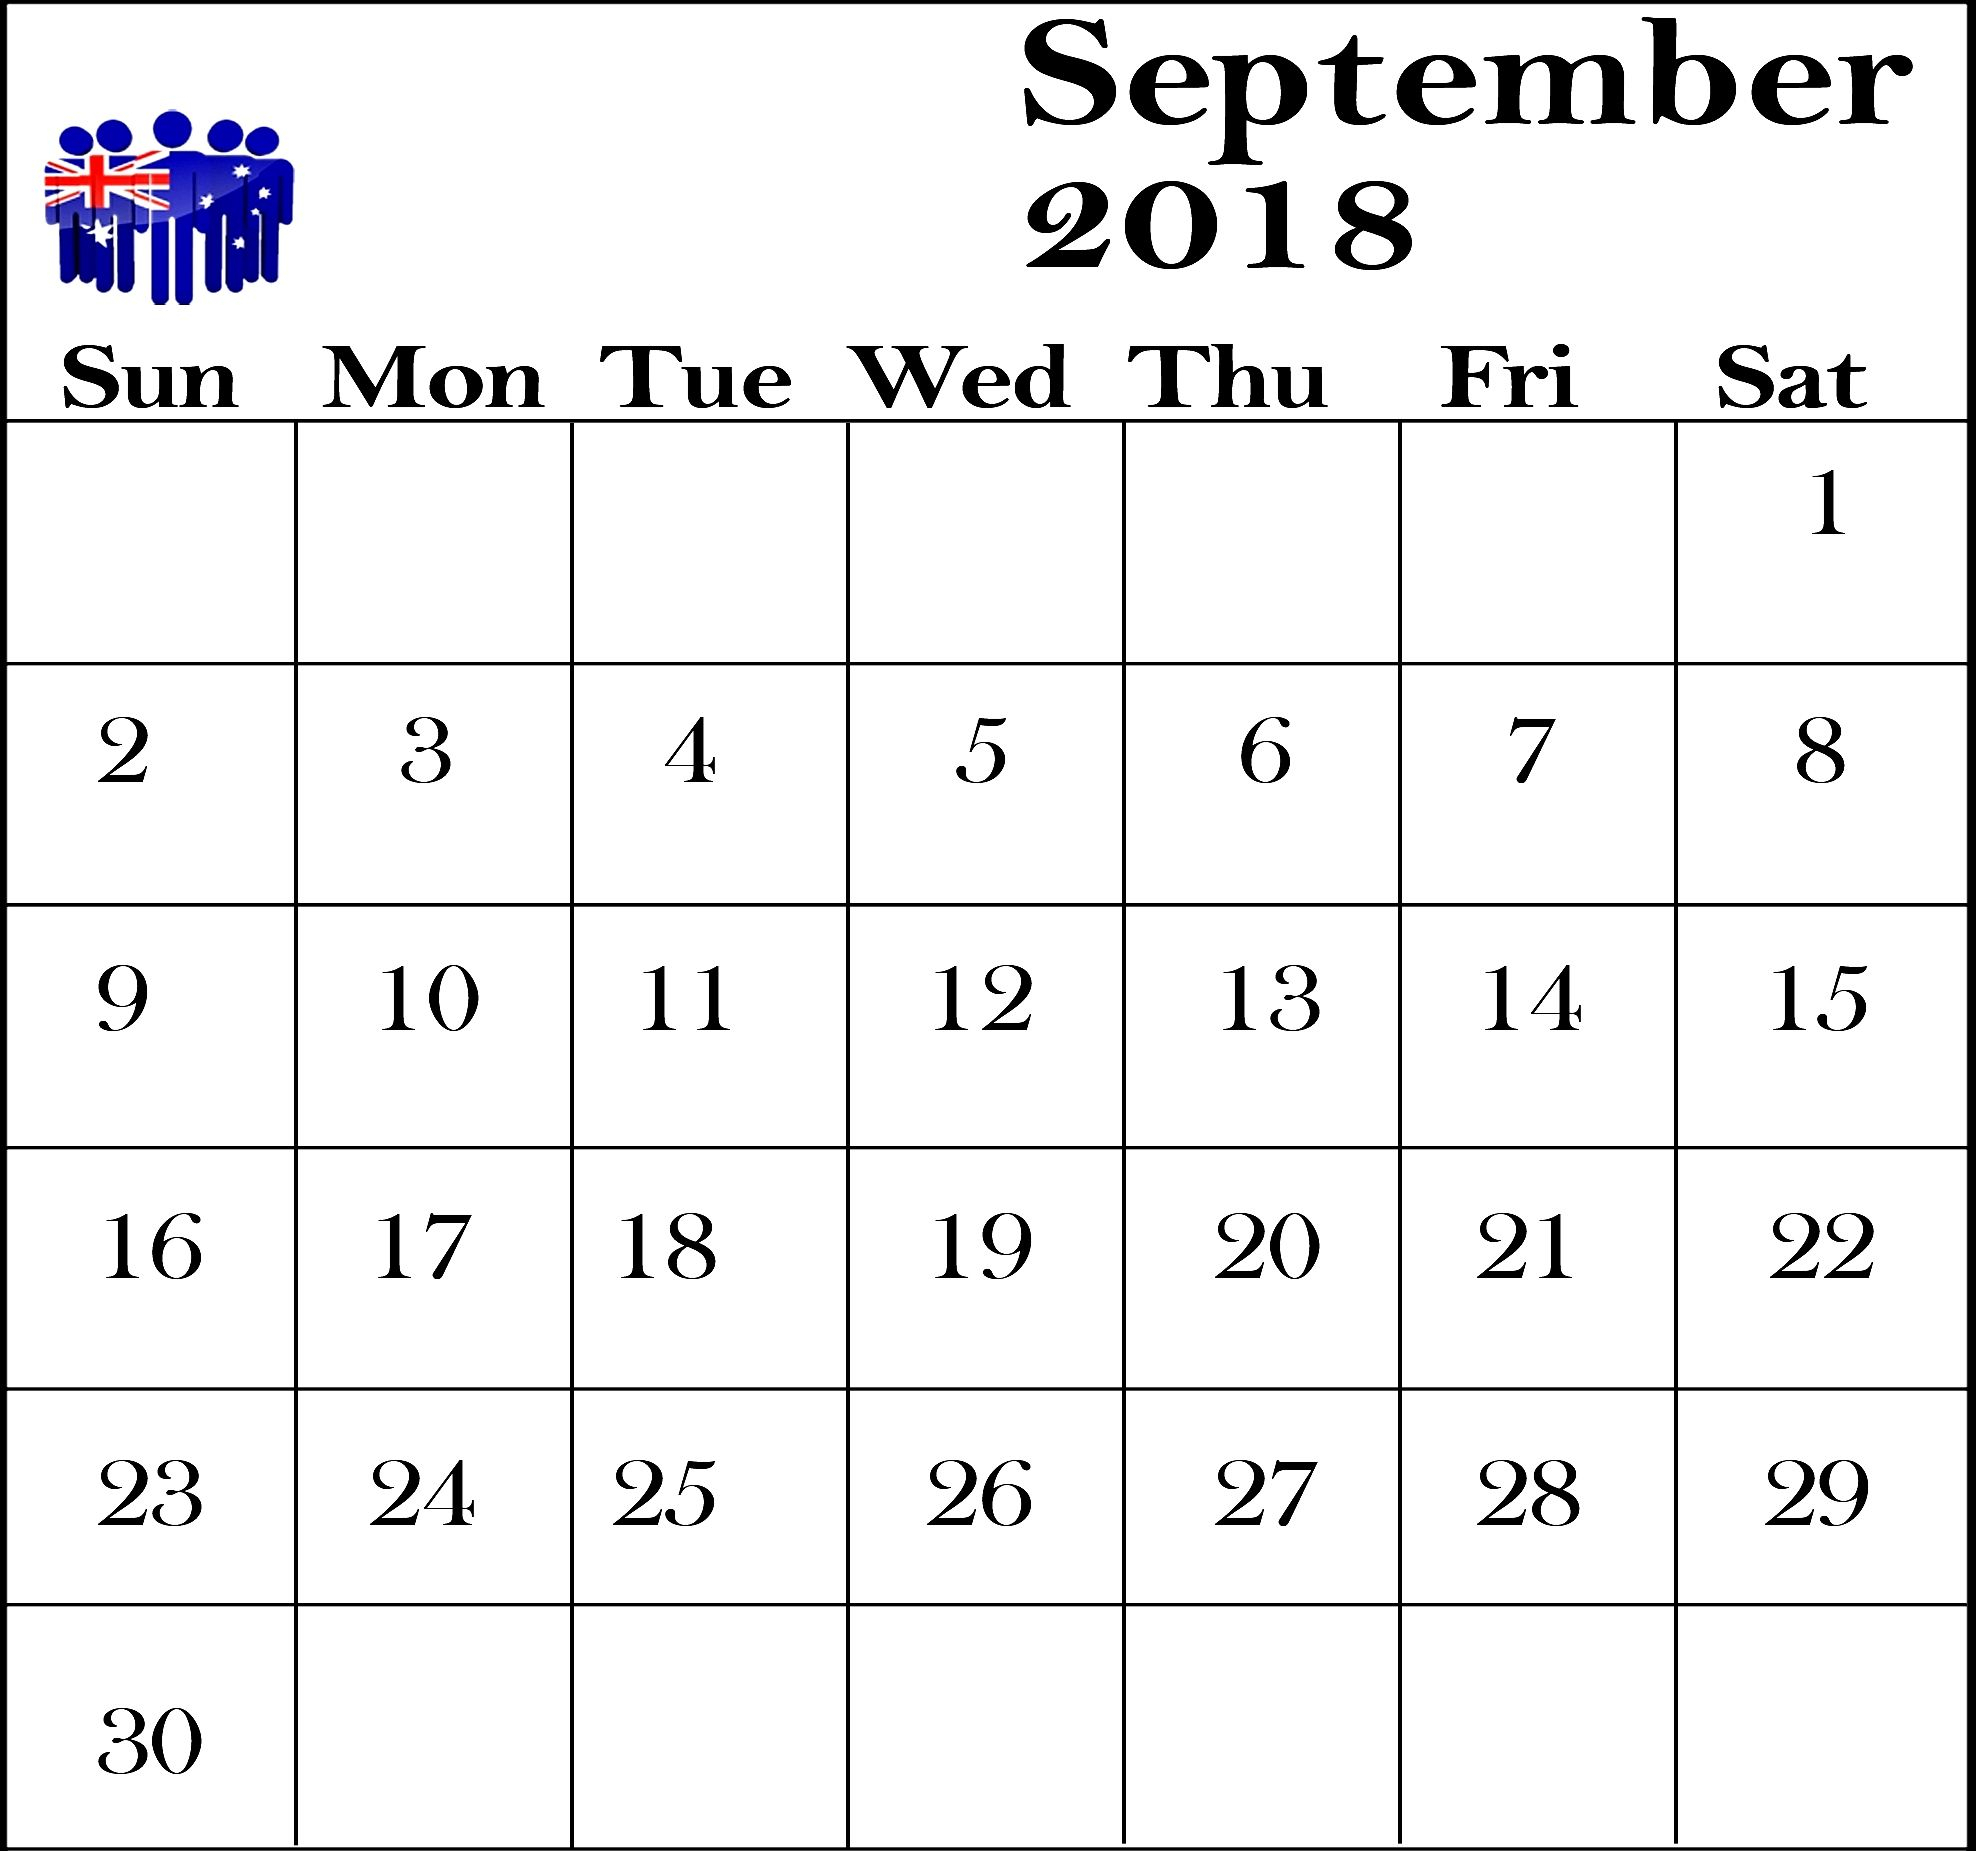 September 2018 Calendar Australia Template | September intended for 2018 Calendar Australia Printable